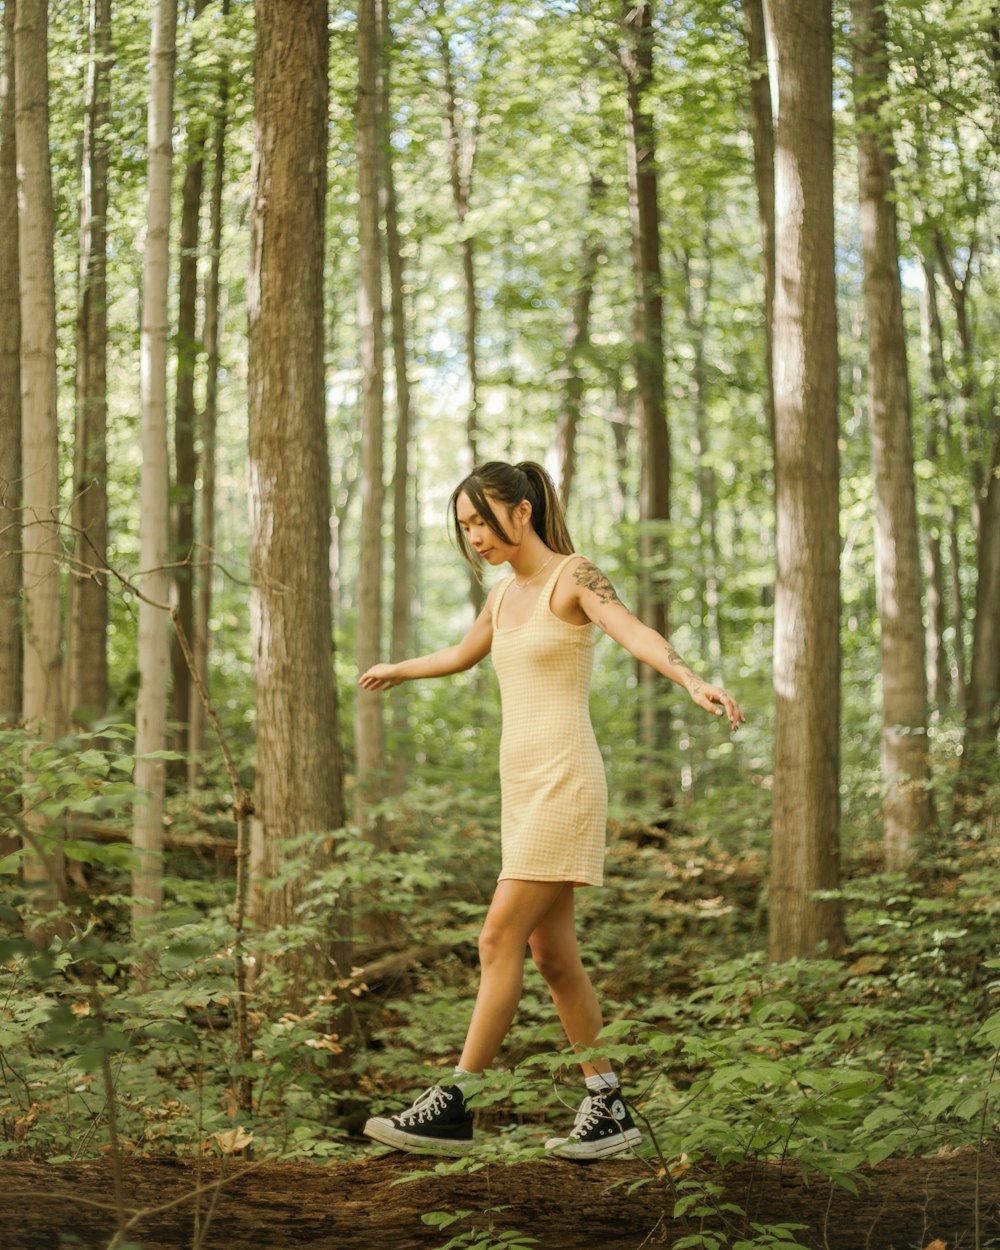 Eine Frau im gelben Kleid geht durch einen Wald